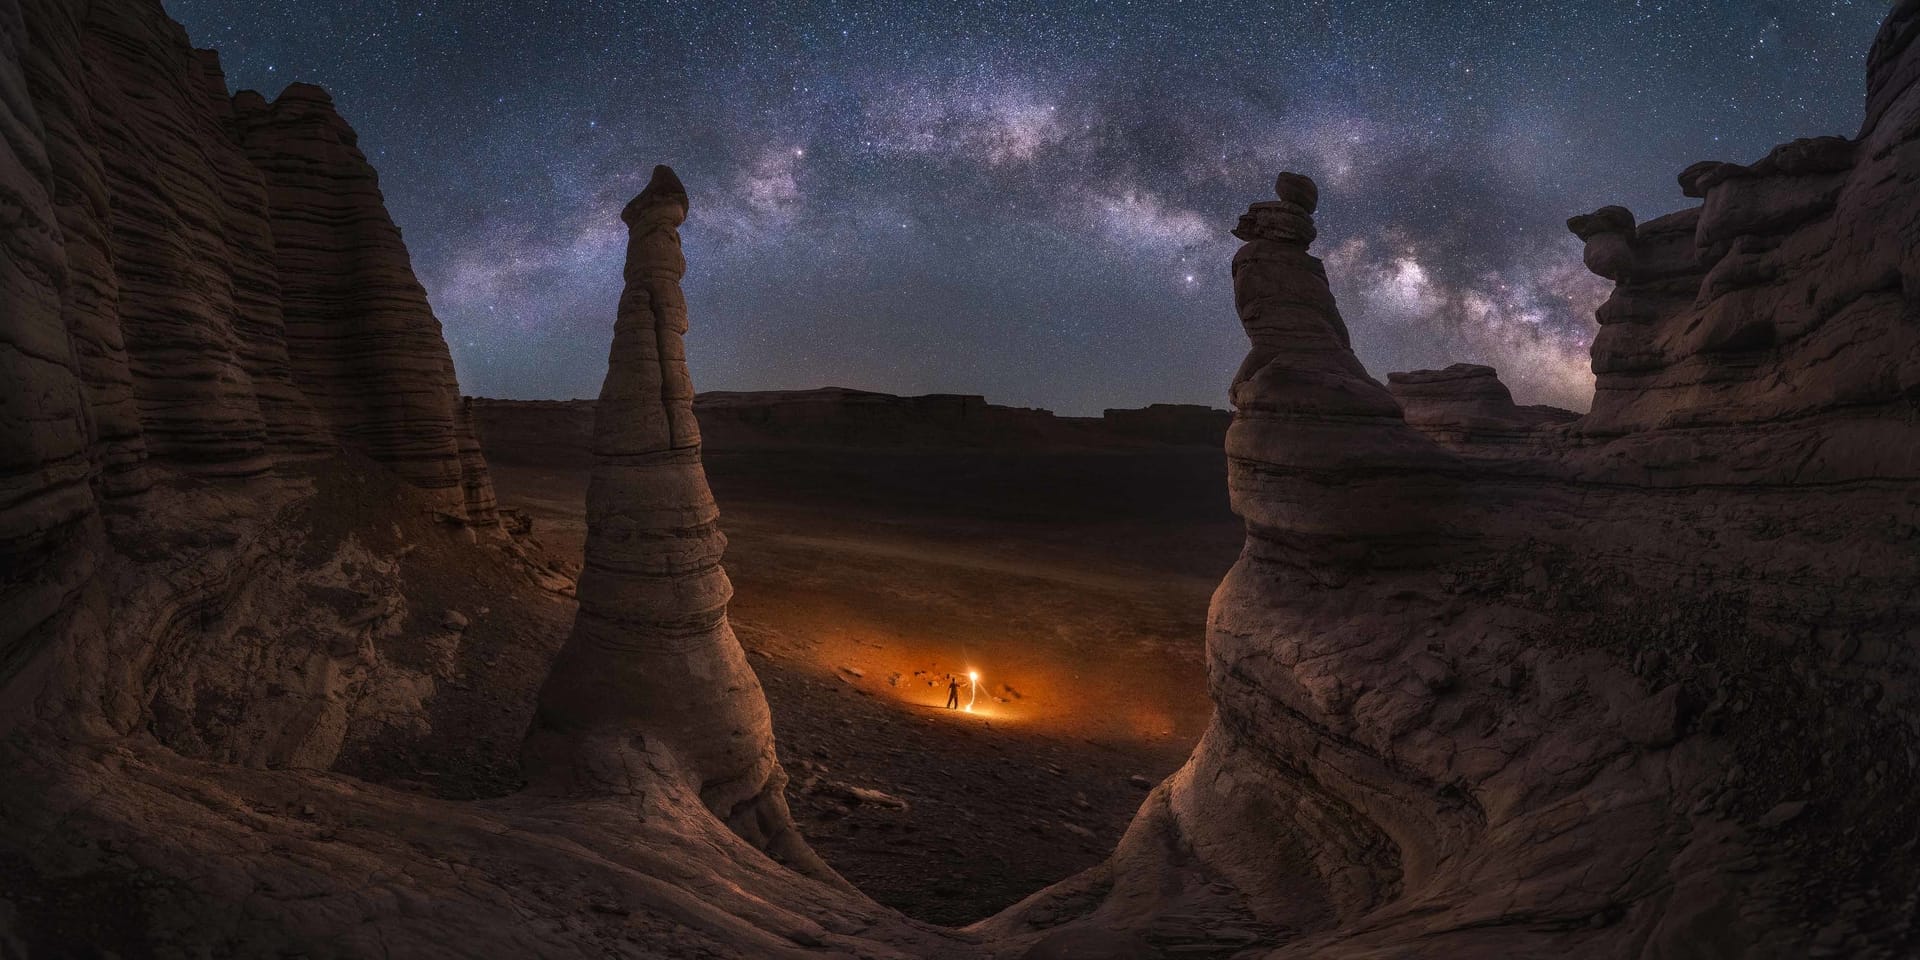 Milky Way photographer of the year China Desert